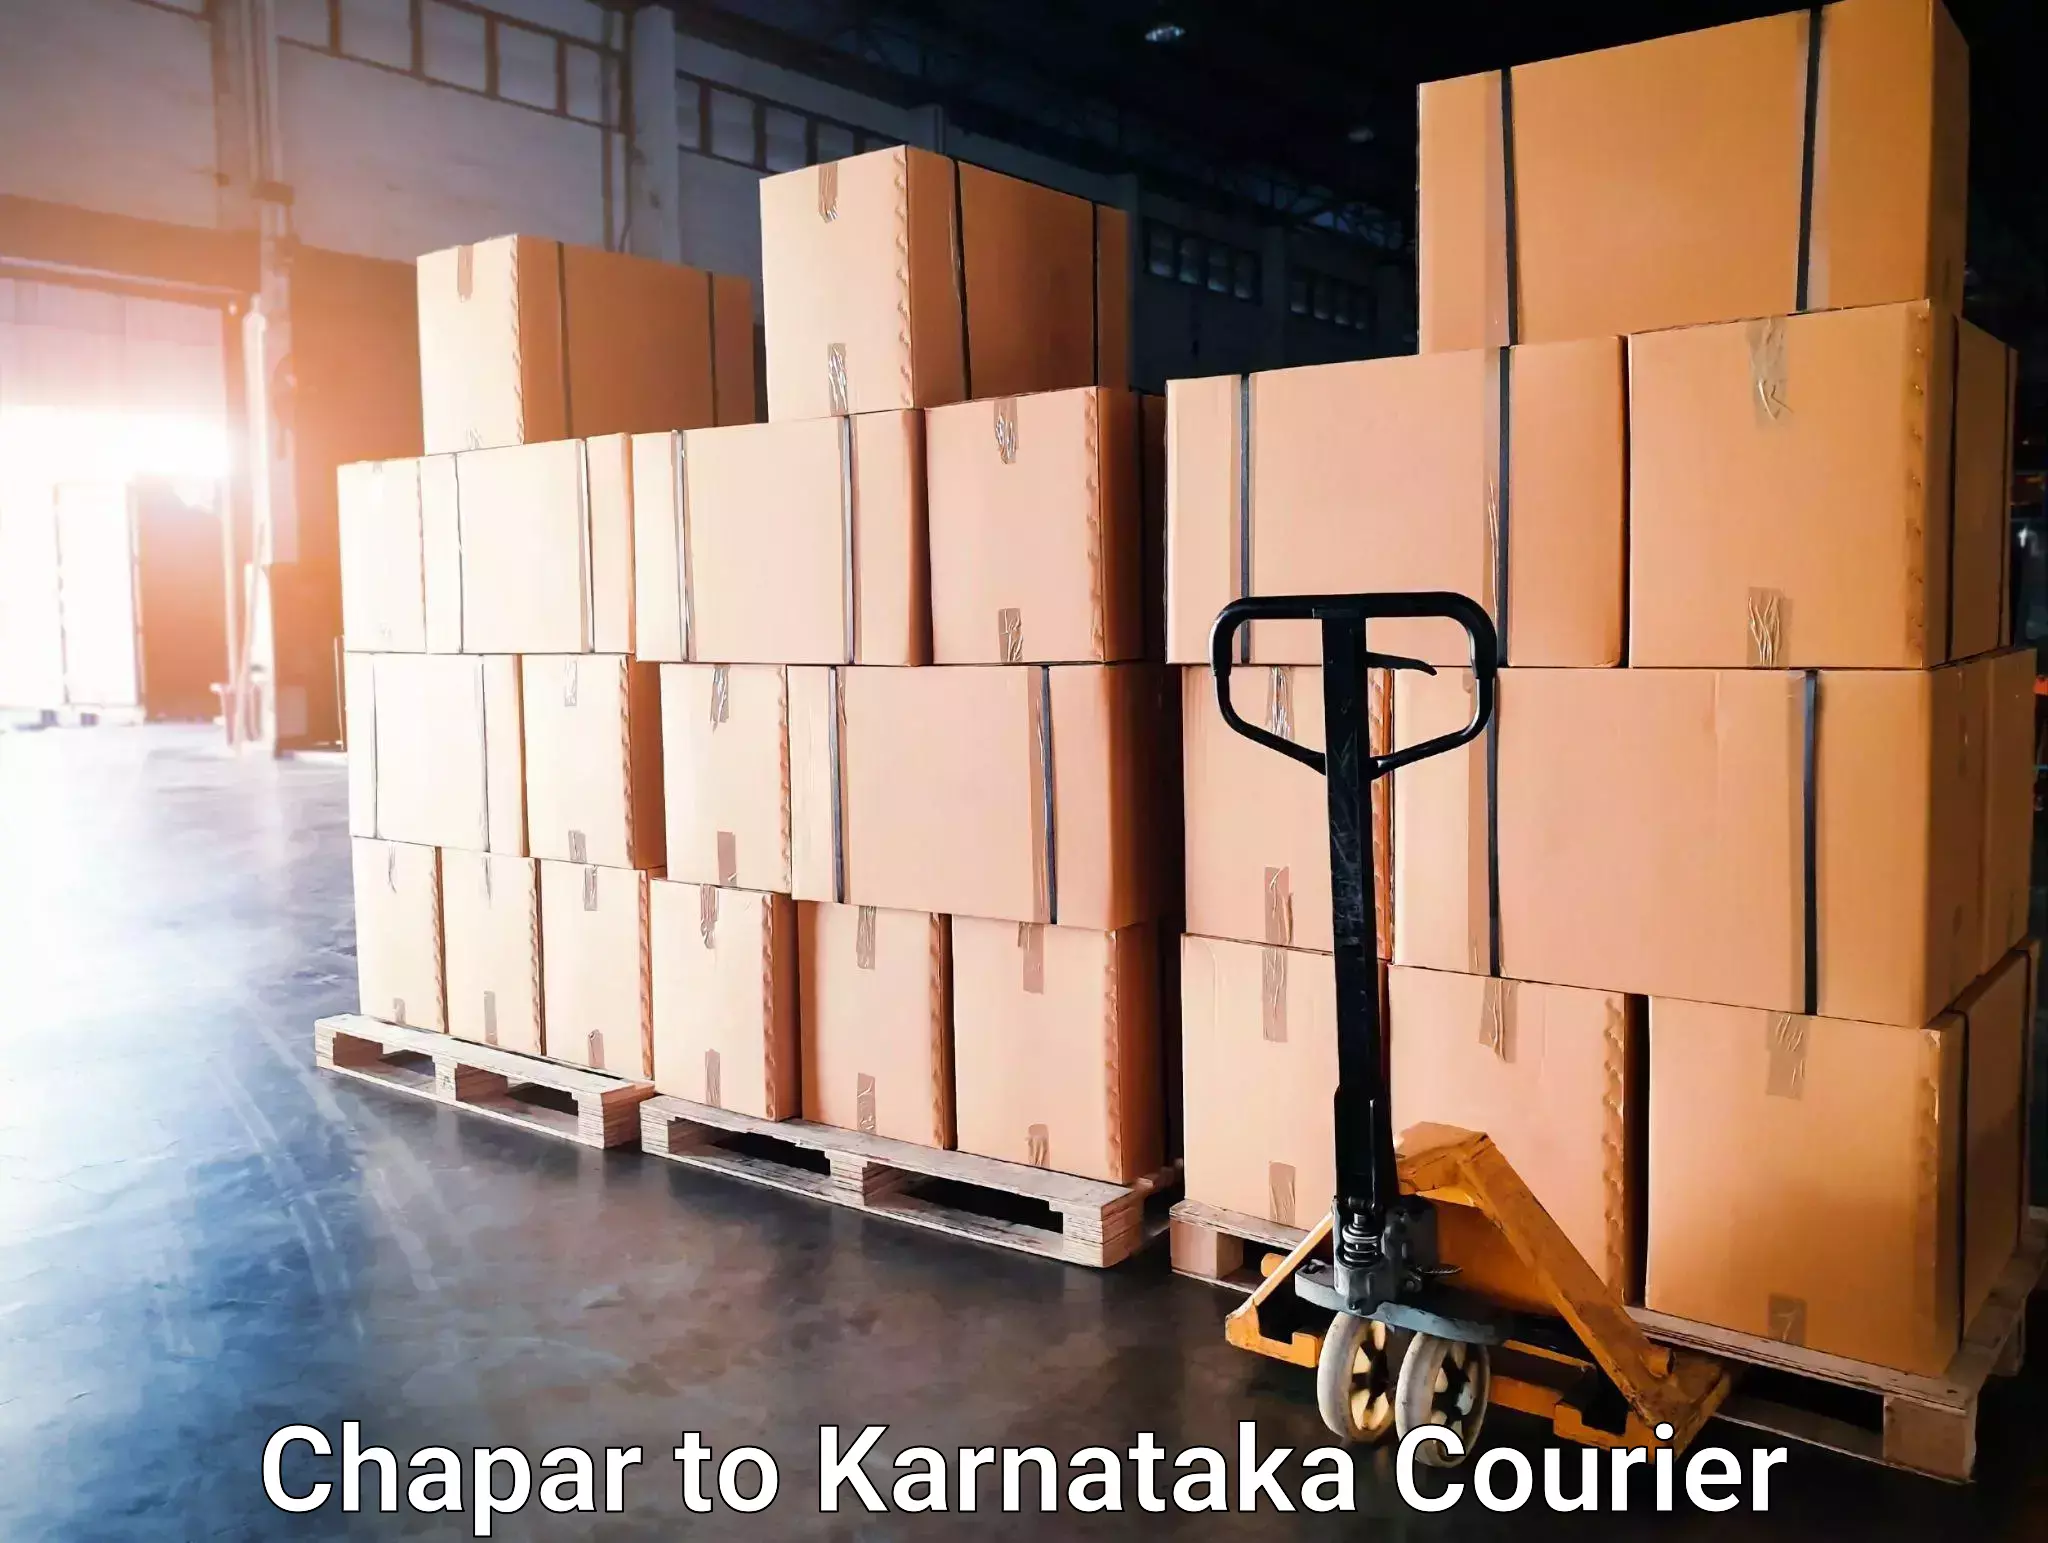 High-speed parcel service Chapar to Toranagallu